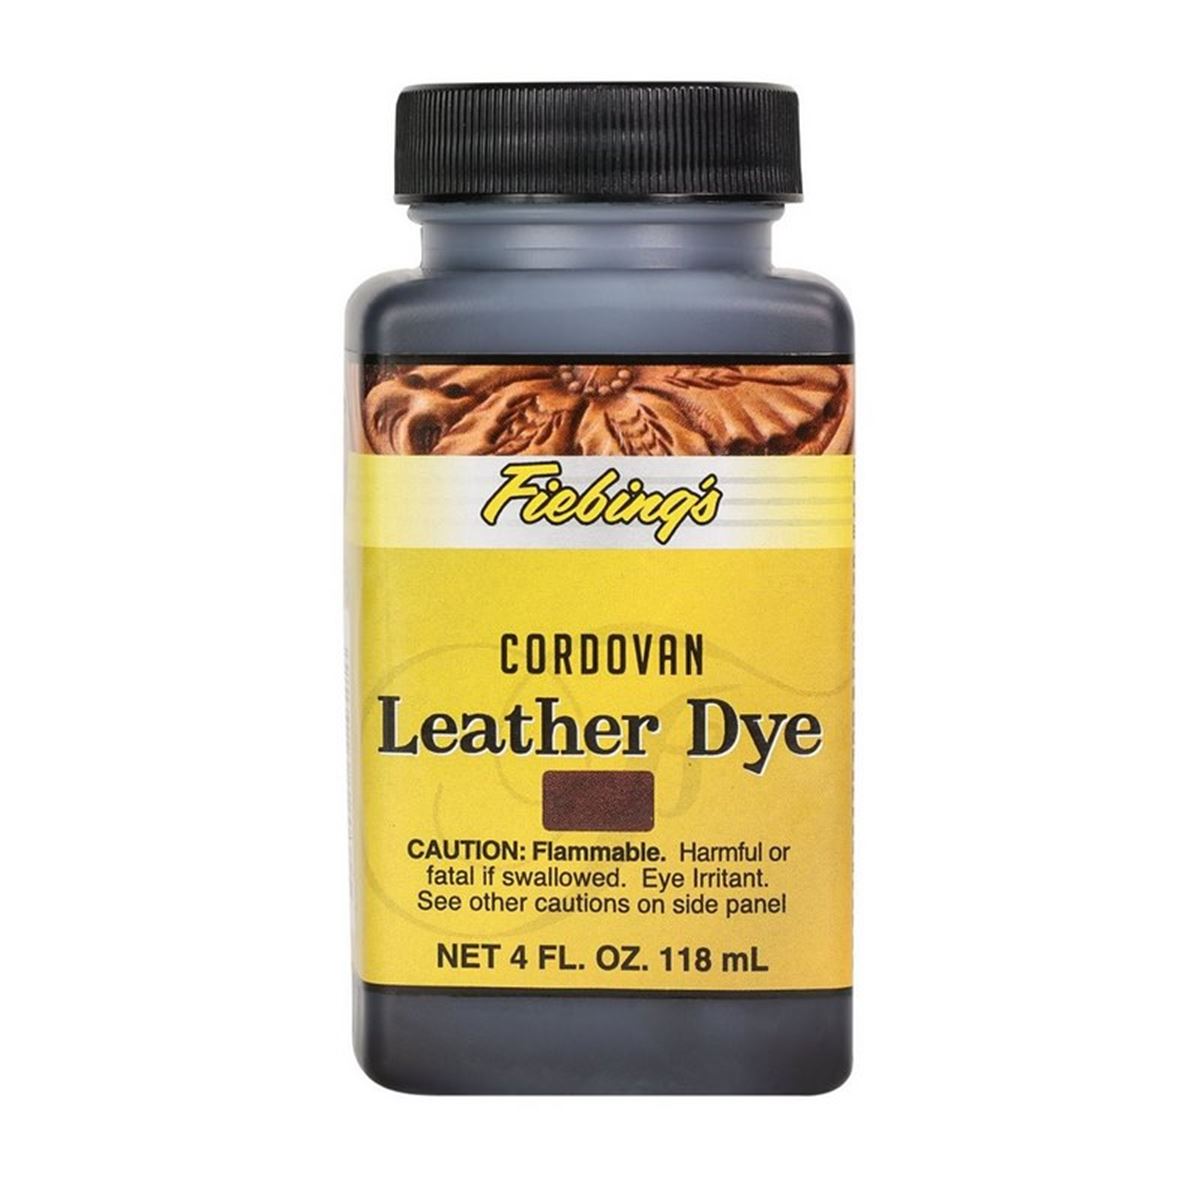 Teinture cuir fiebing s leather dye cordovan 118 ml